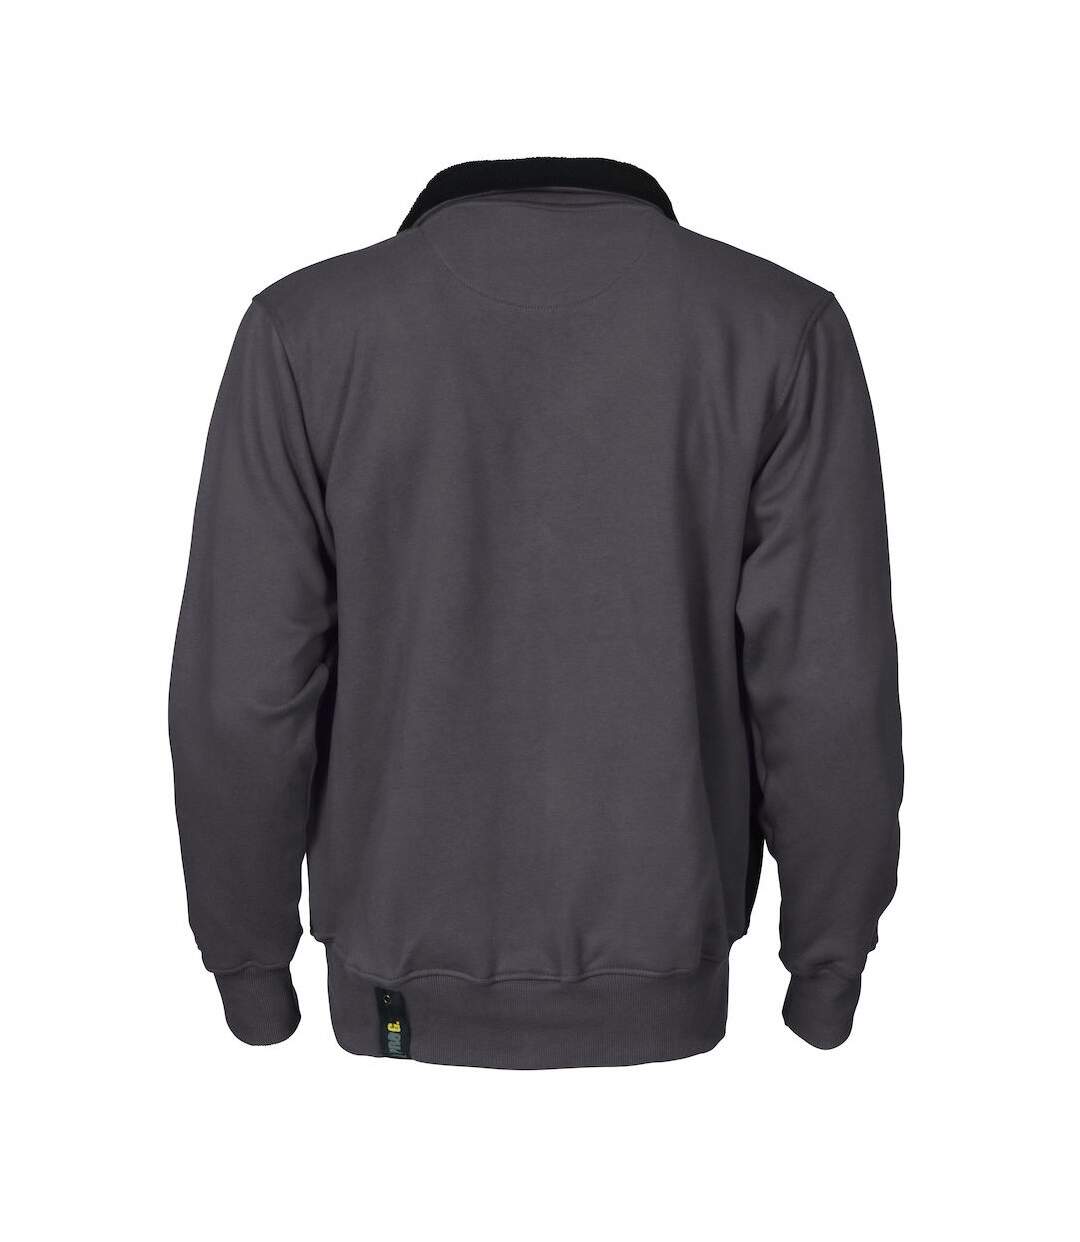 Projob Mens Pro Gen Full Zip Sweatshirt (Gray)